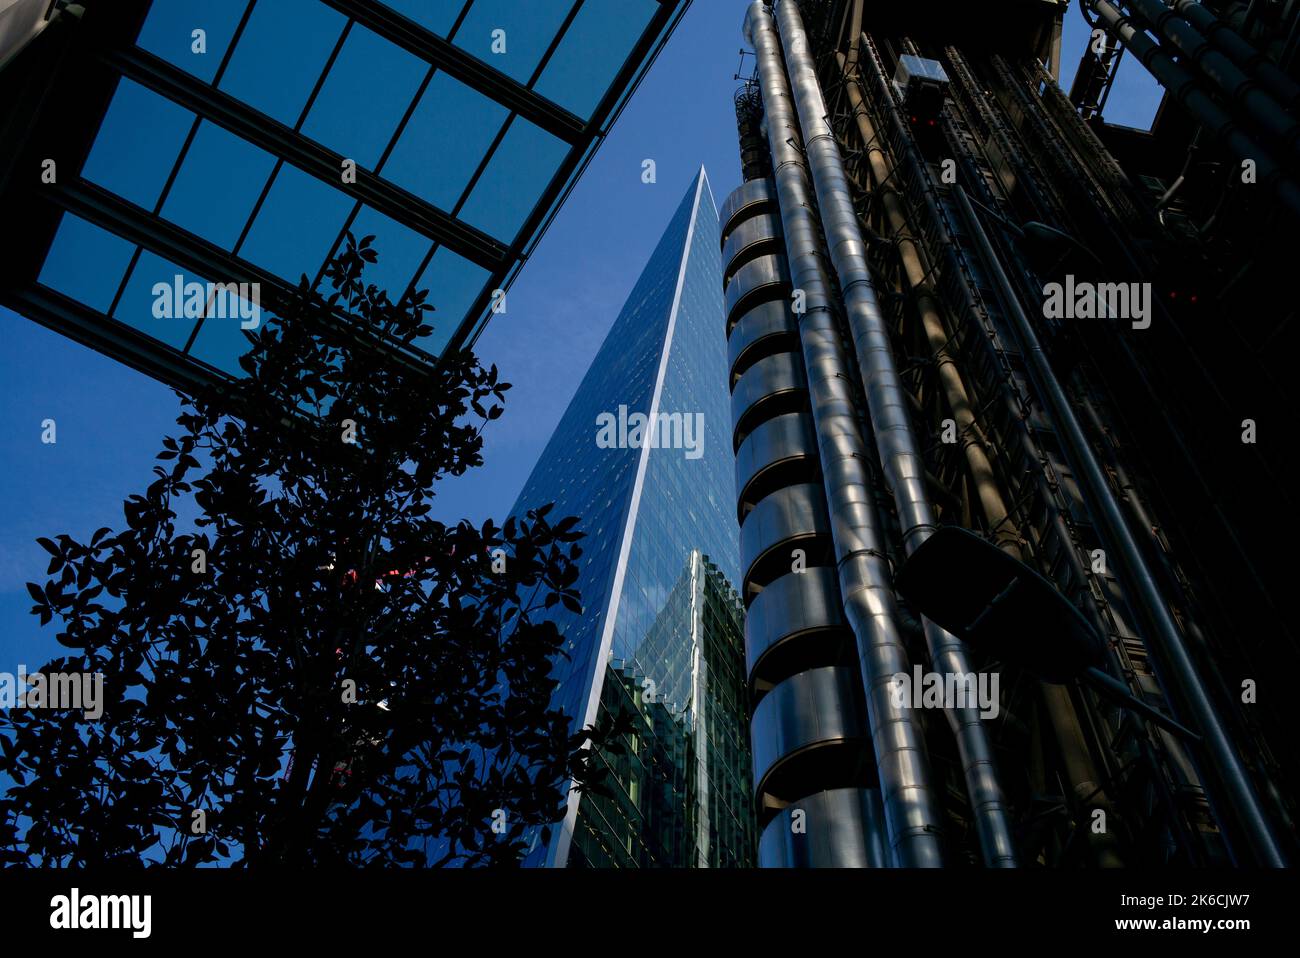 Imagen en ángulo bajo de los rascacielos en el distrito financiero de Londres, Reino Unido. edificio lloyds, el Scalpel la milla cuadrada. Foto de stock